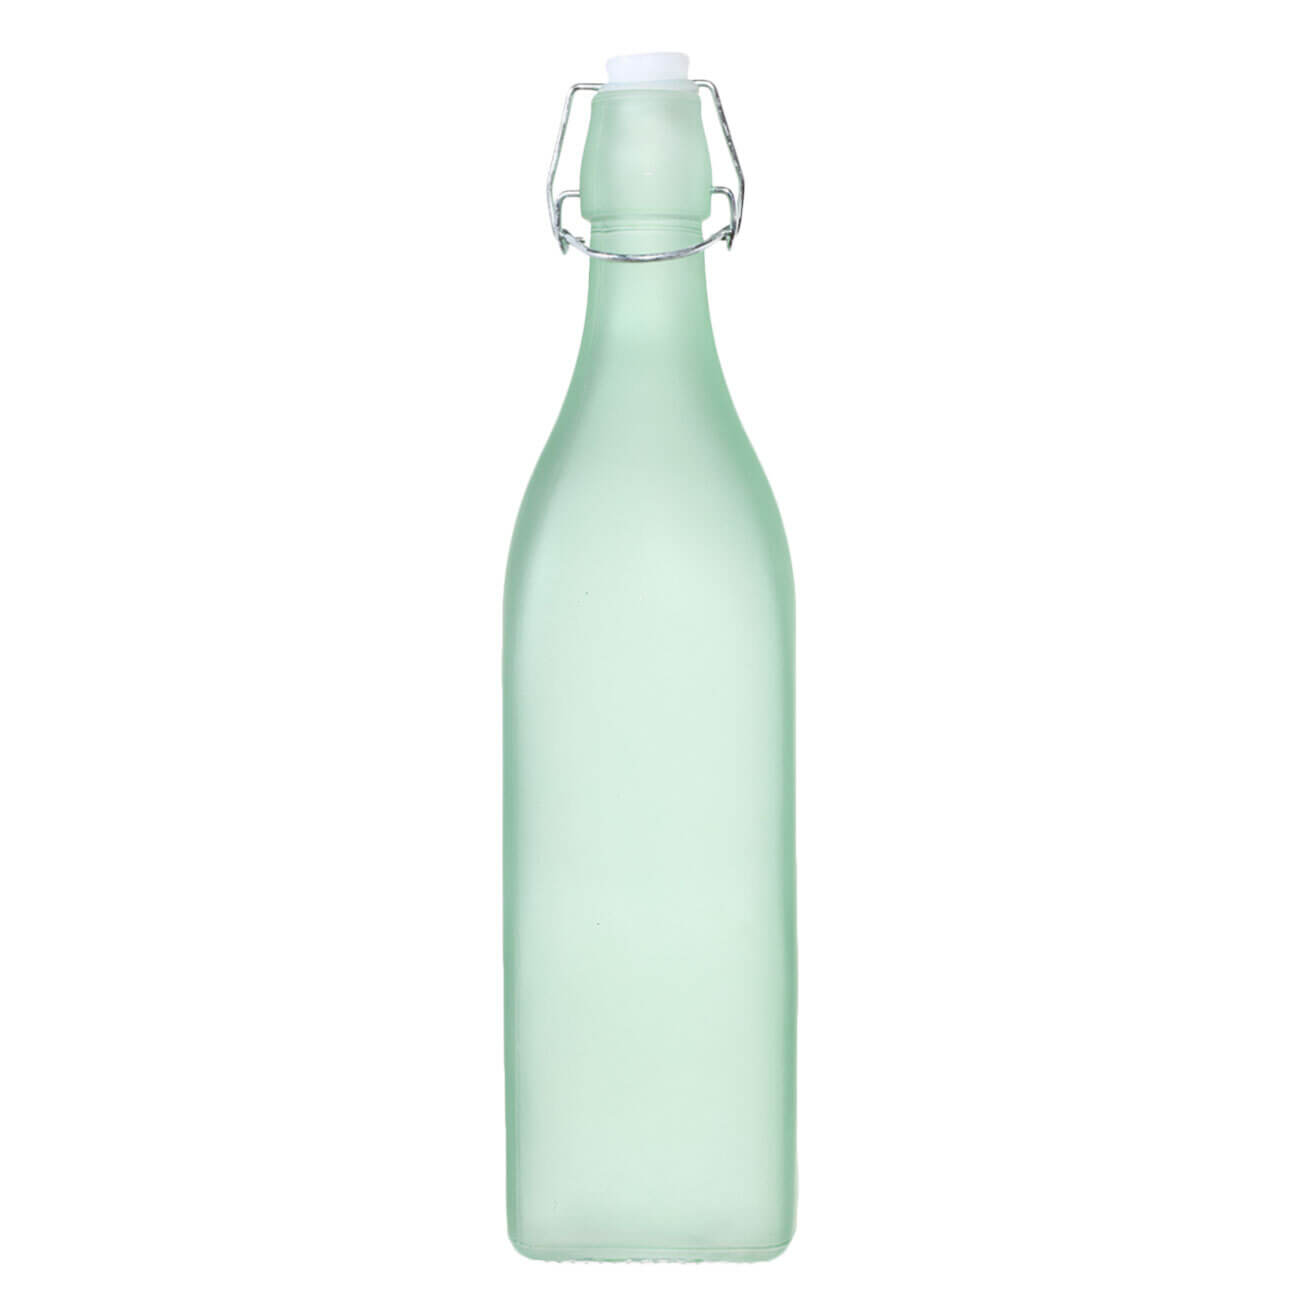 Бутылка для масла или уксуса, 1 л, с клипсой, стекло/металл, зеленая, Light kitchen бутылка для масла уксуса mallony 500мл стеклянная с дозатором 103806